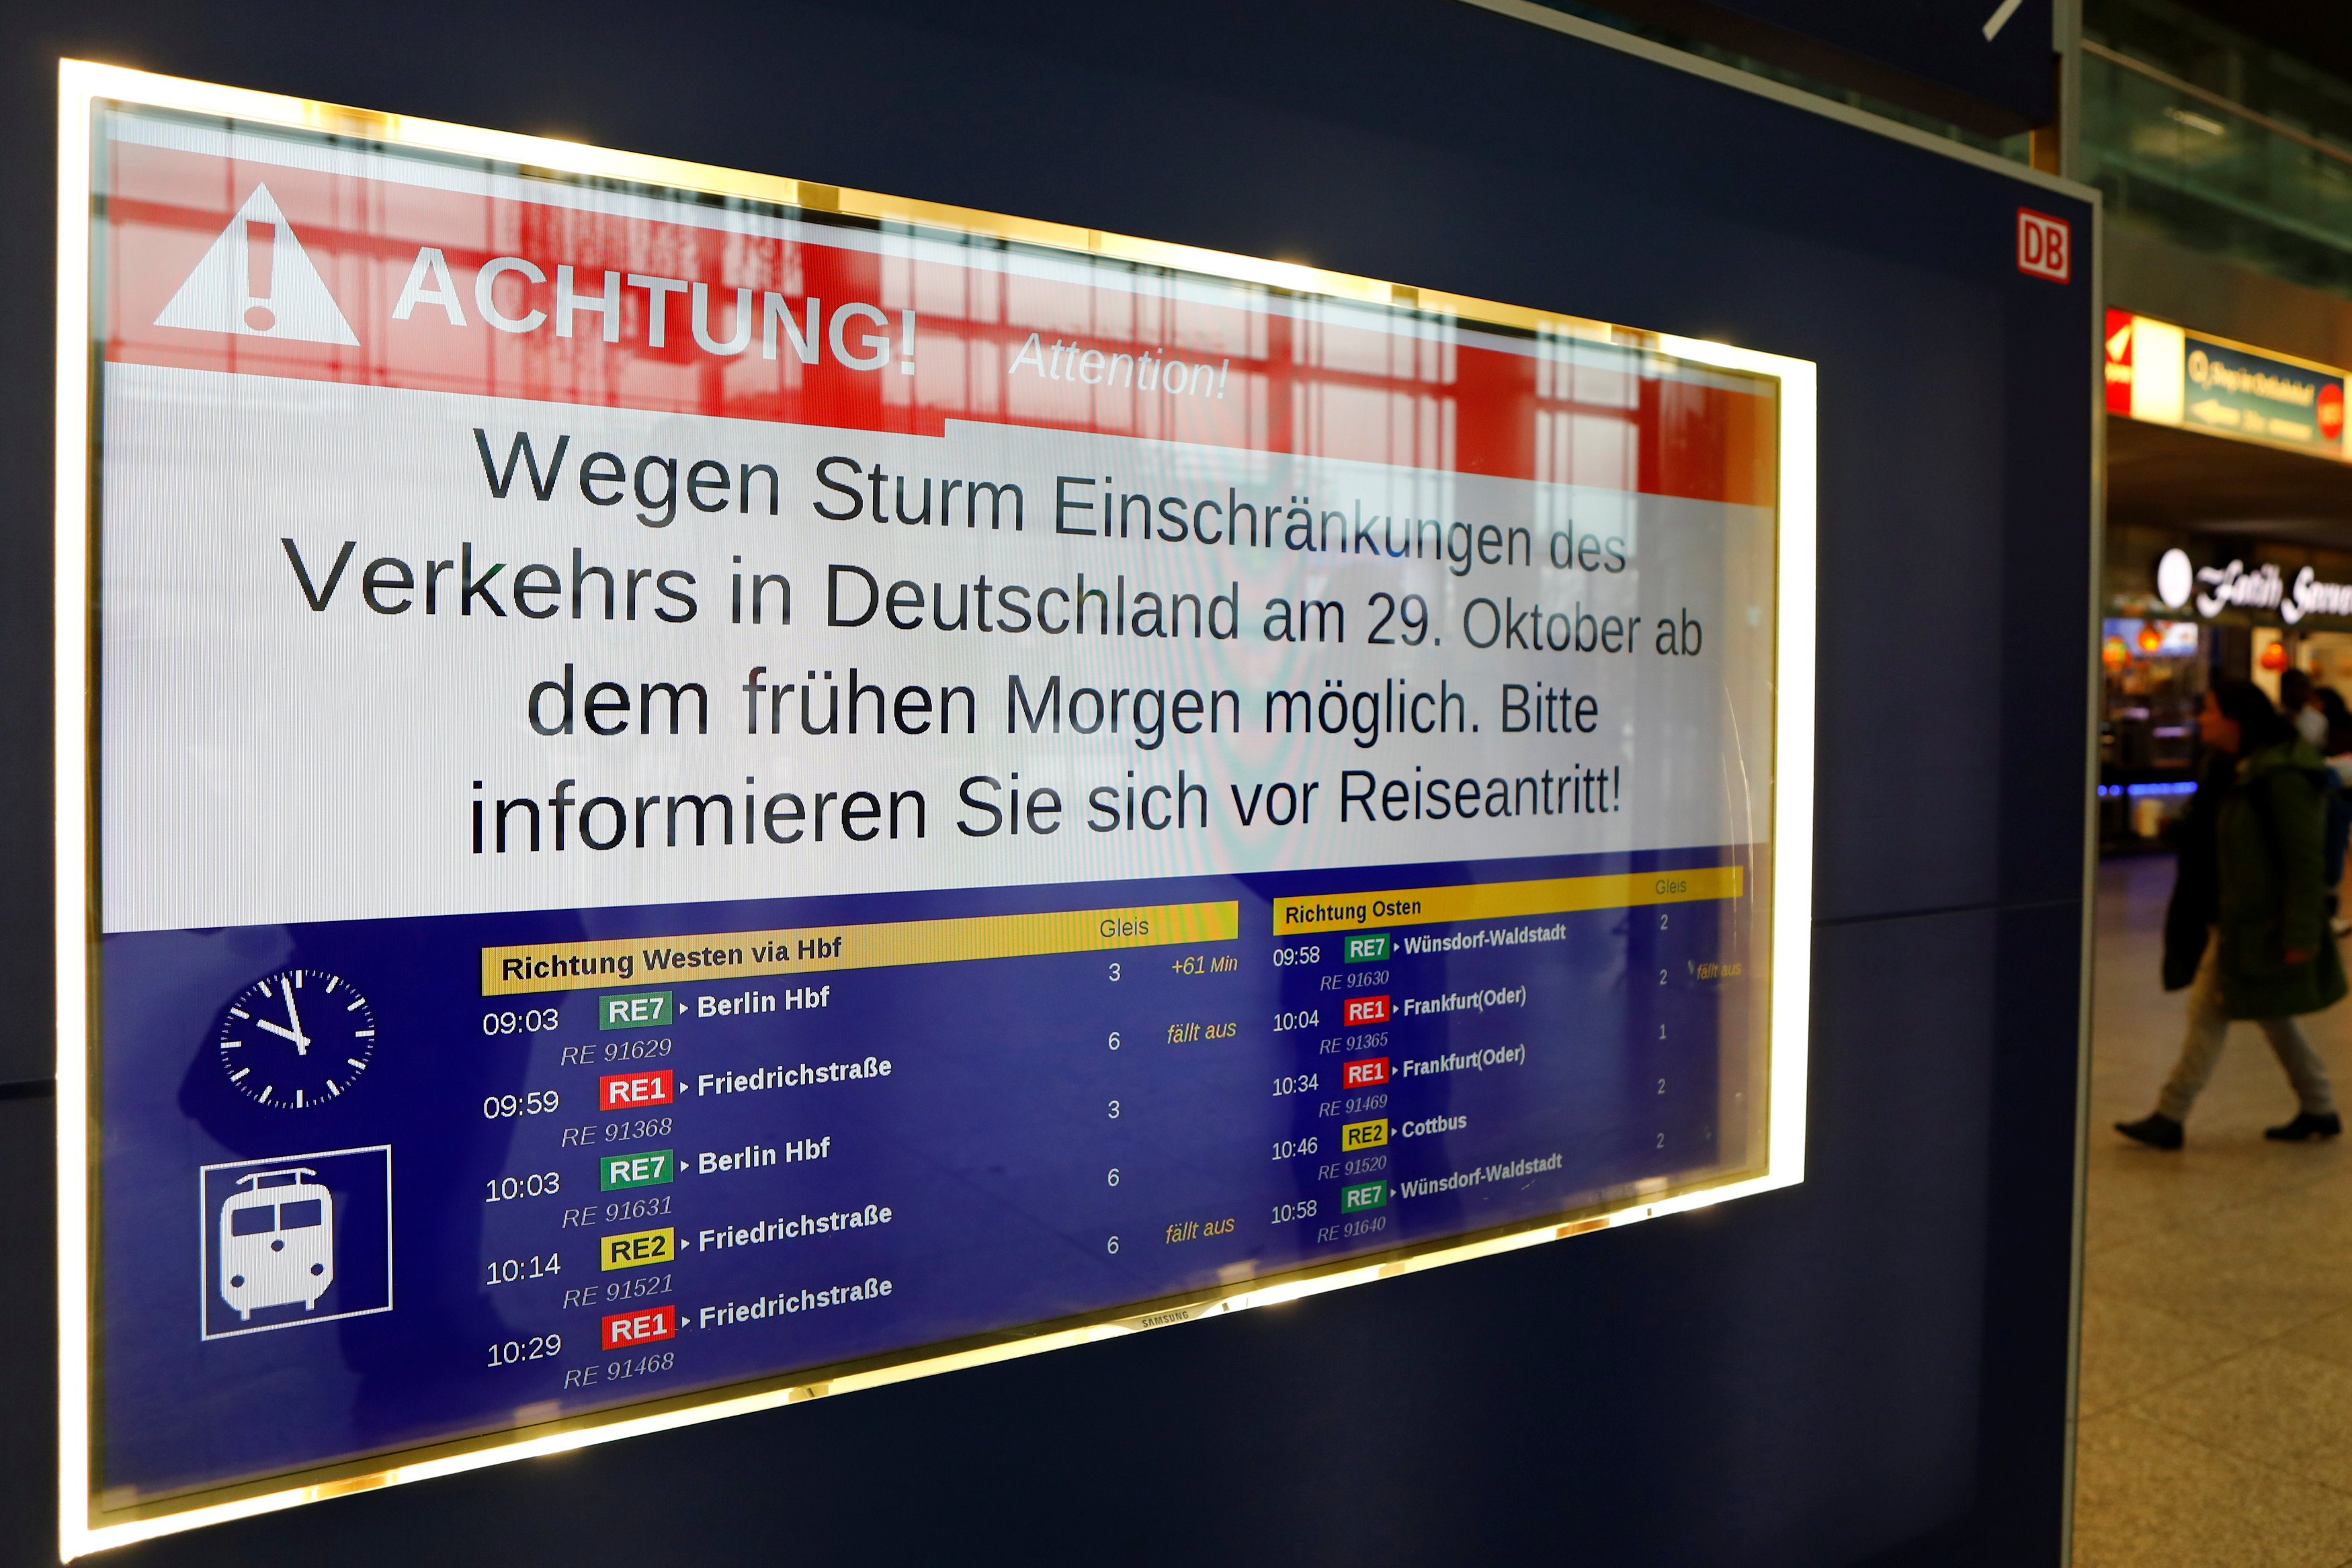 إعلان تحذير بإلغاء رحلات قطارات فى برلين بسبب عاصفة